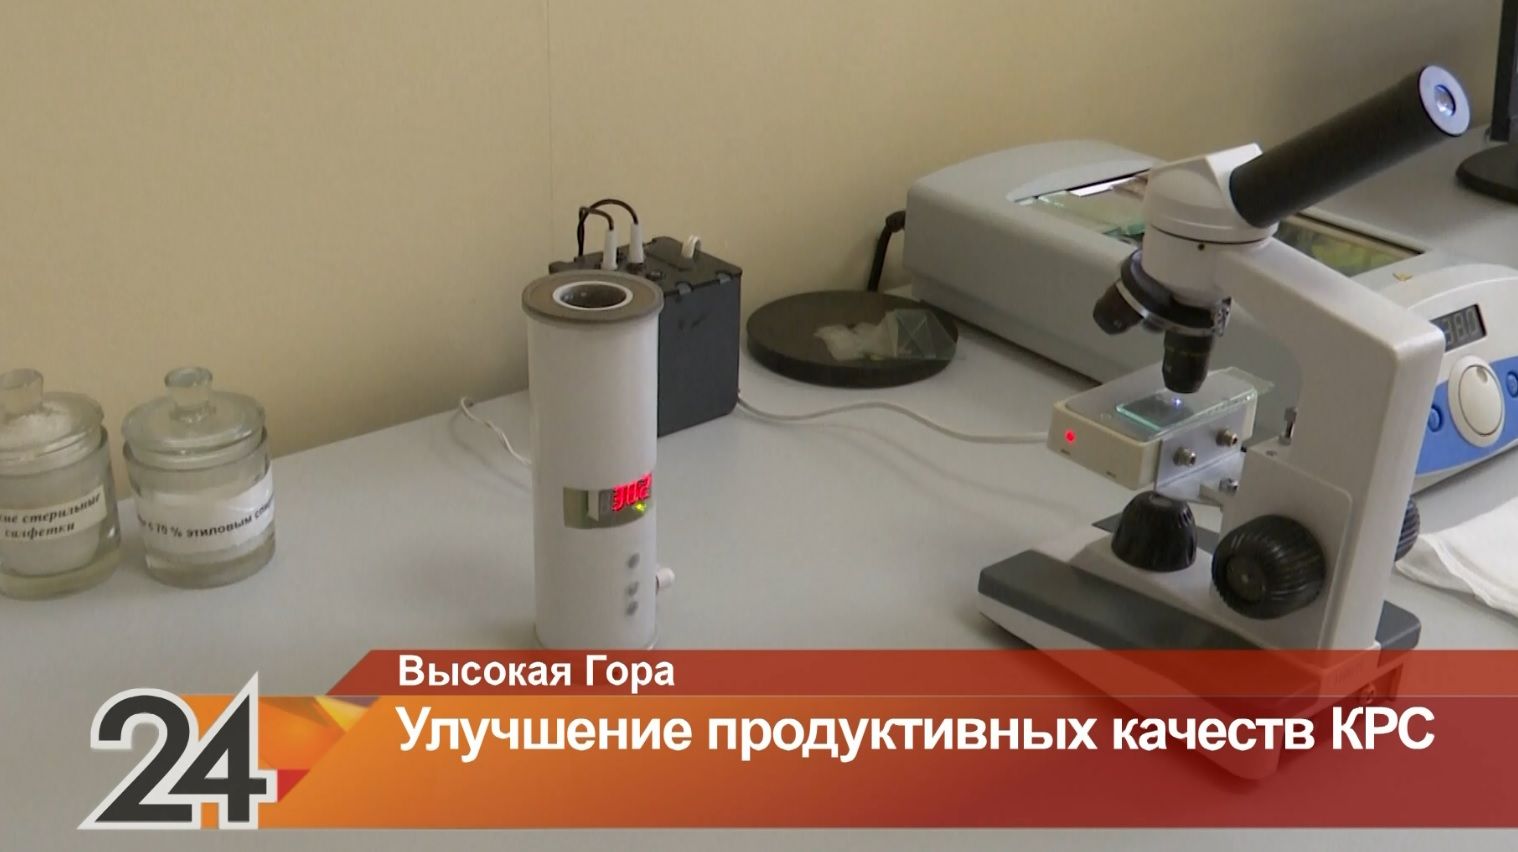 В Одессе расследуют исчезновение бычьей спермы на 85 млн грн - Новости Одессы | Сегодня